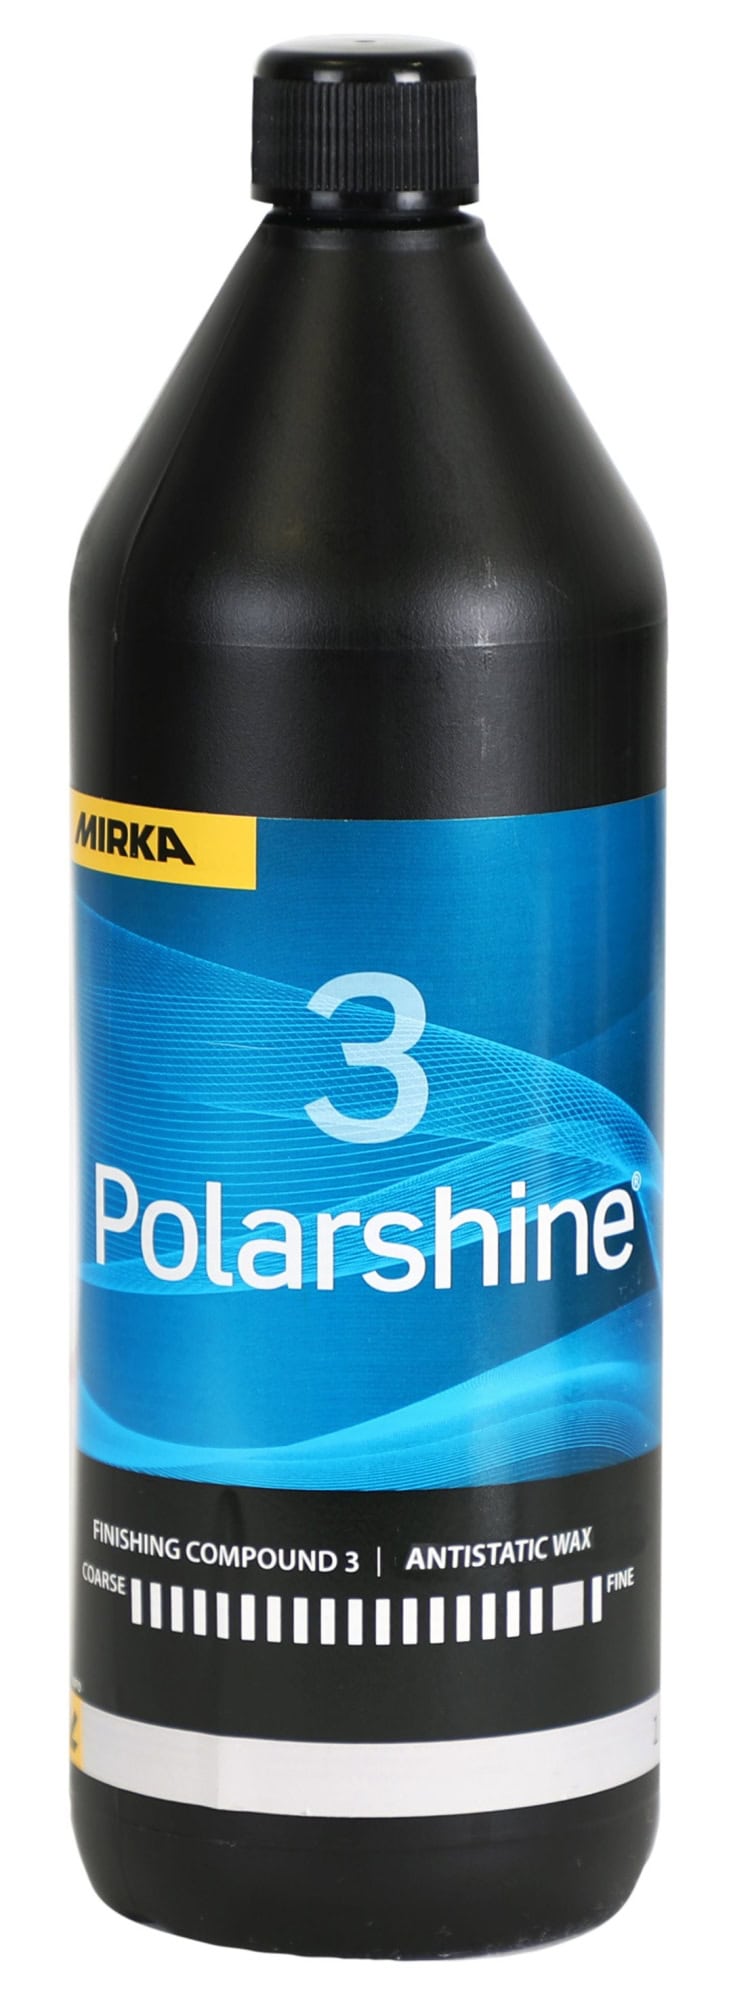 Mirka® Polarshine 3 Antistatic Wax 7992660311, 1 Liter, Hochleistung Wachsversiegelung zur Versiegelung von hochwertigen Lacken